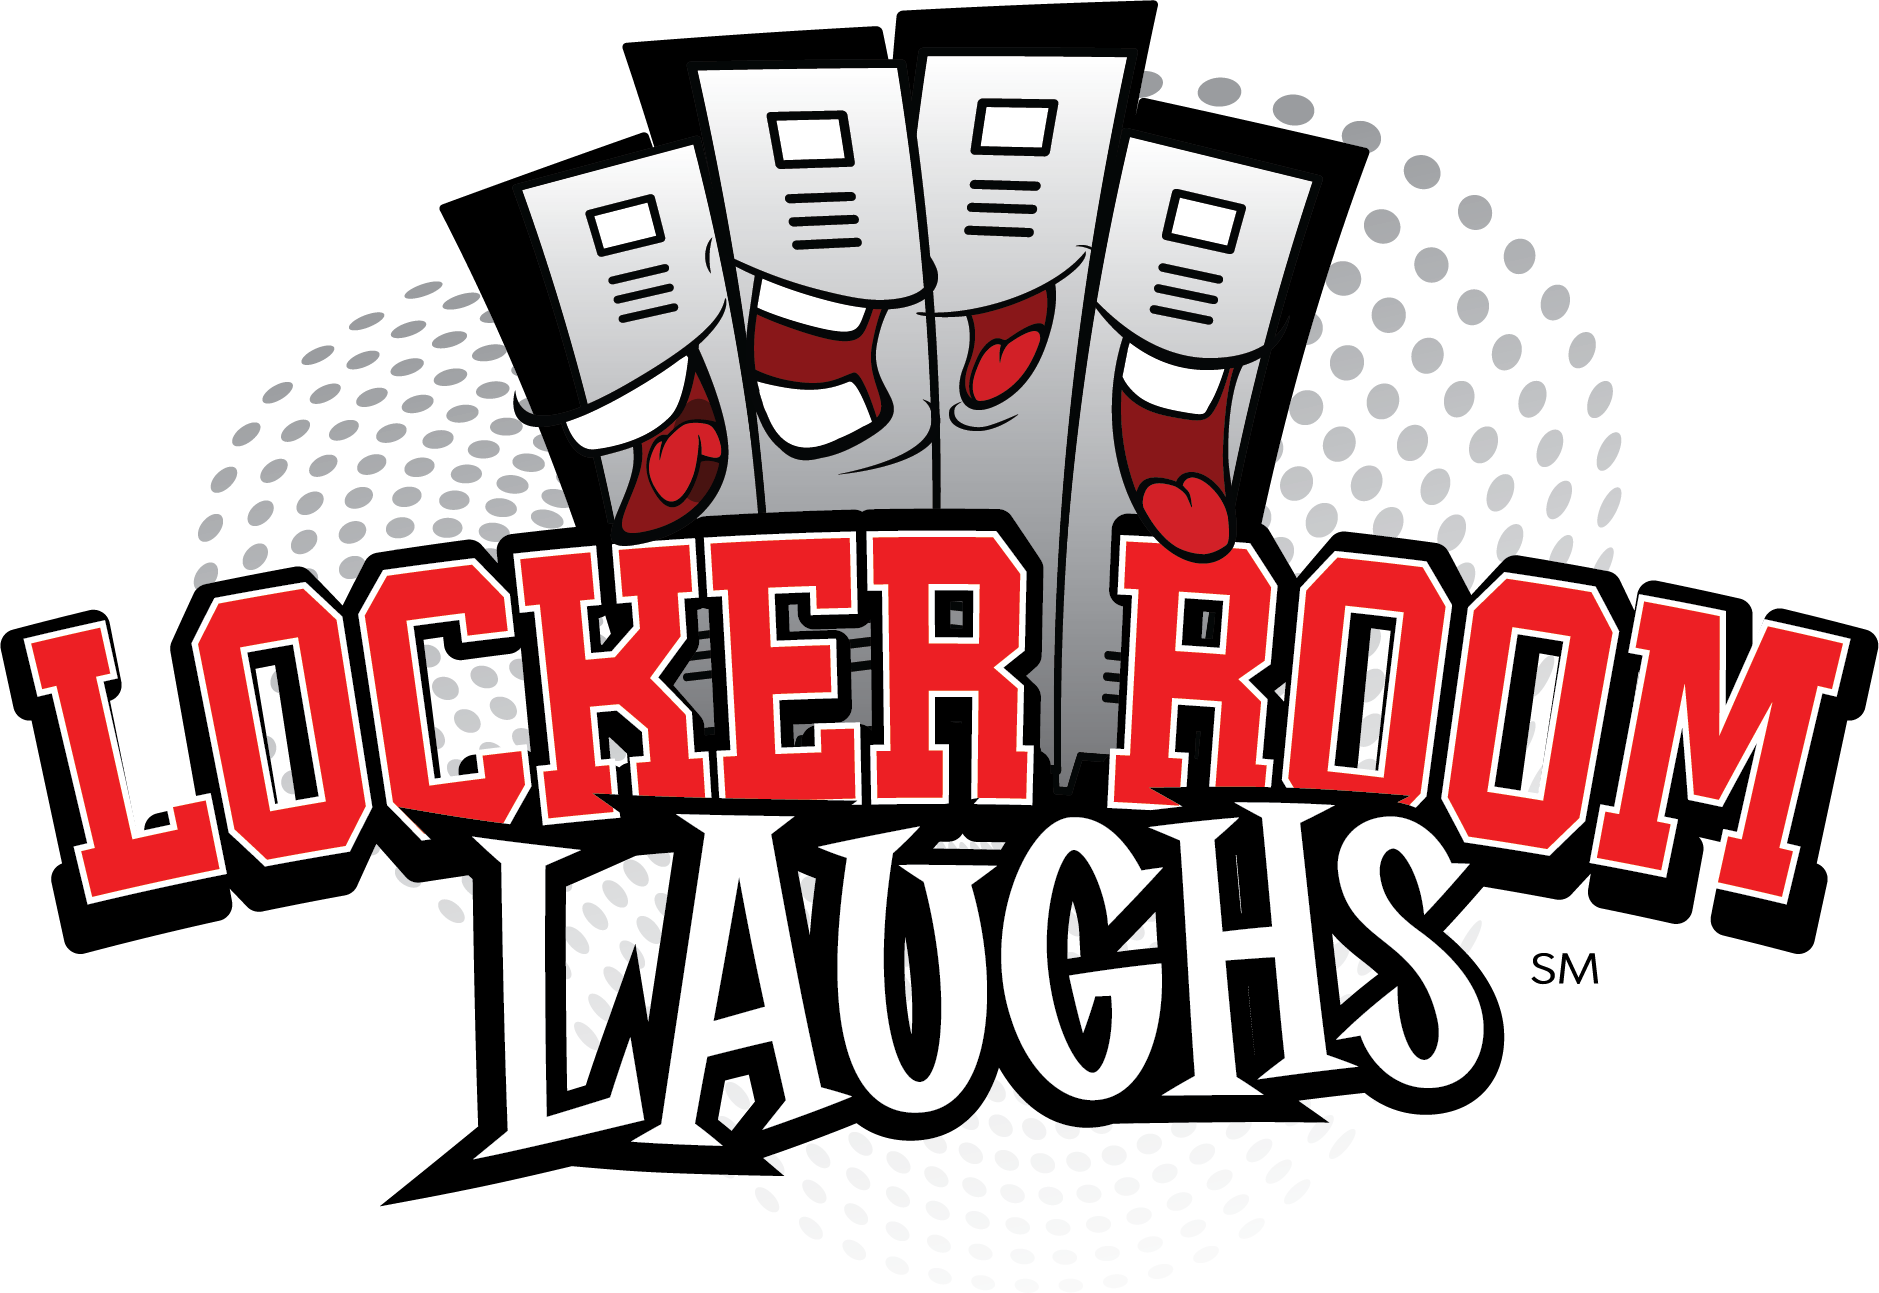 Locker Room Laughs